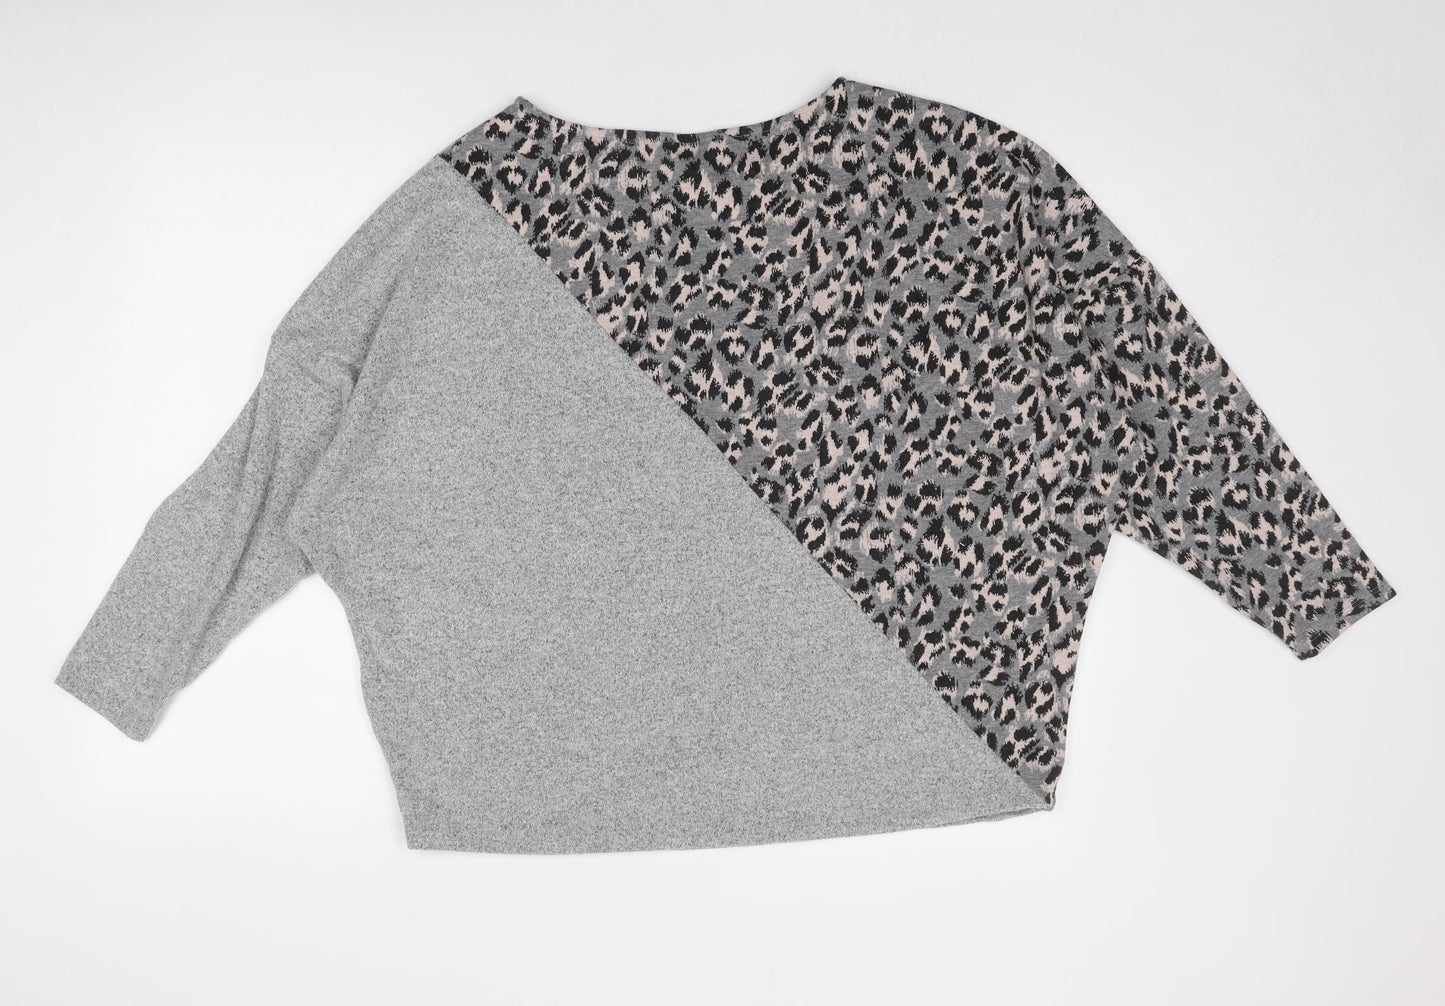 Sonder Studio Womens Grey Round Neck Animal Print Viscose Pullover Jumper Size 18 - Leopard Pattern